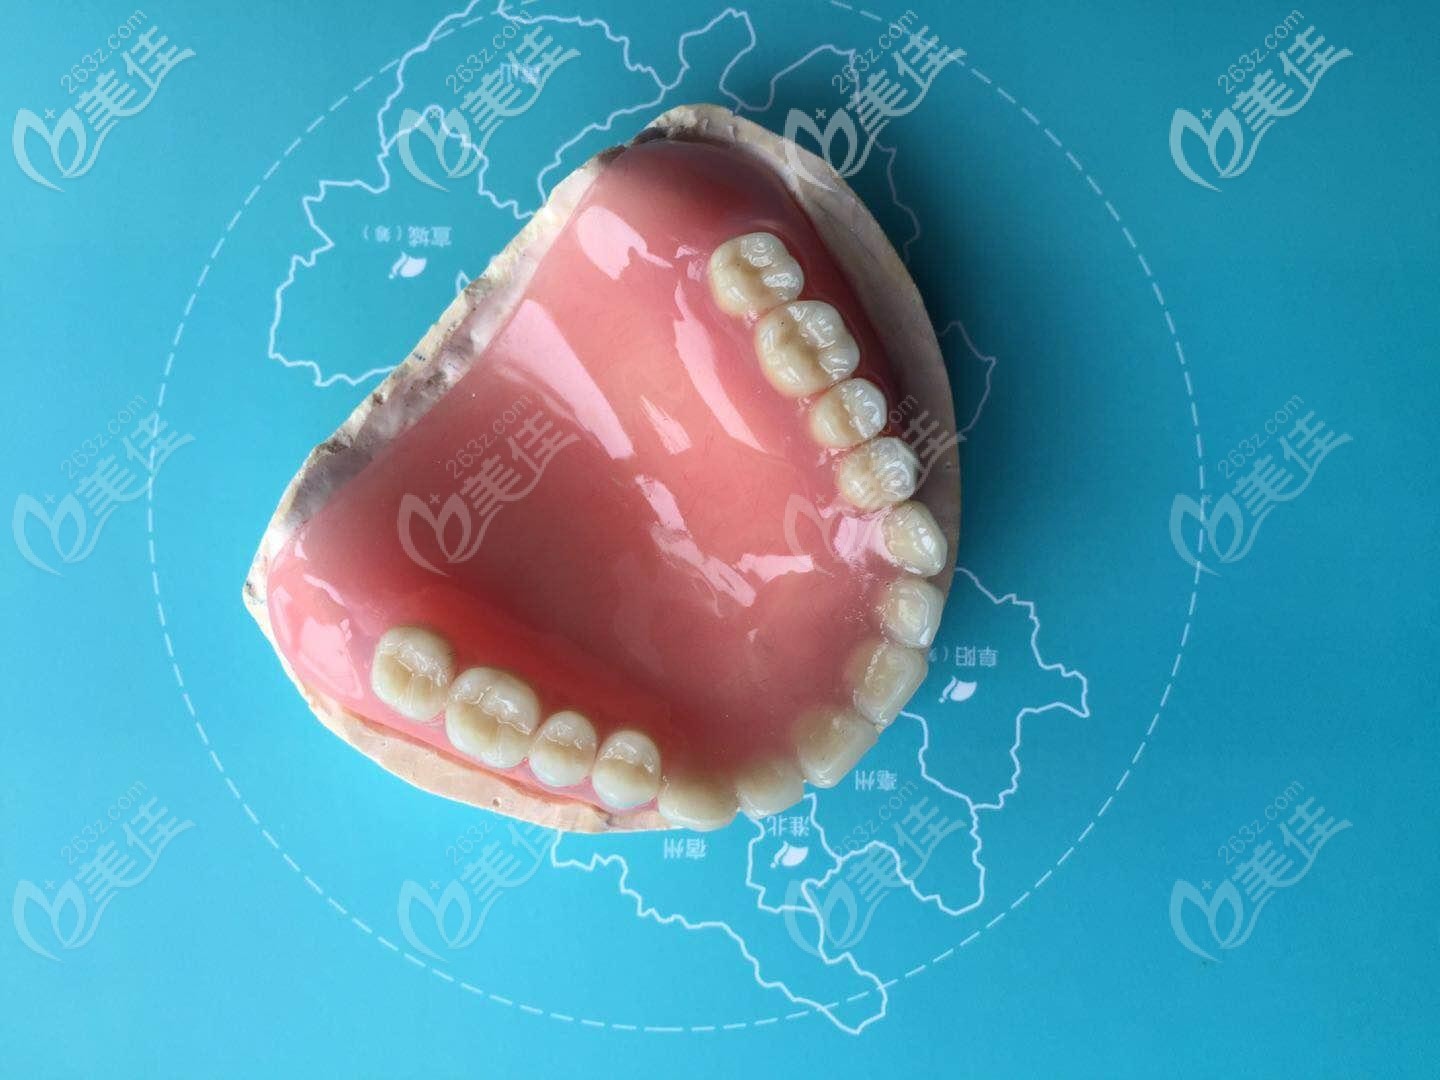 30岁半口牙缺失采用什么修复方式好?能做纯钛吸附性义齿吗?